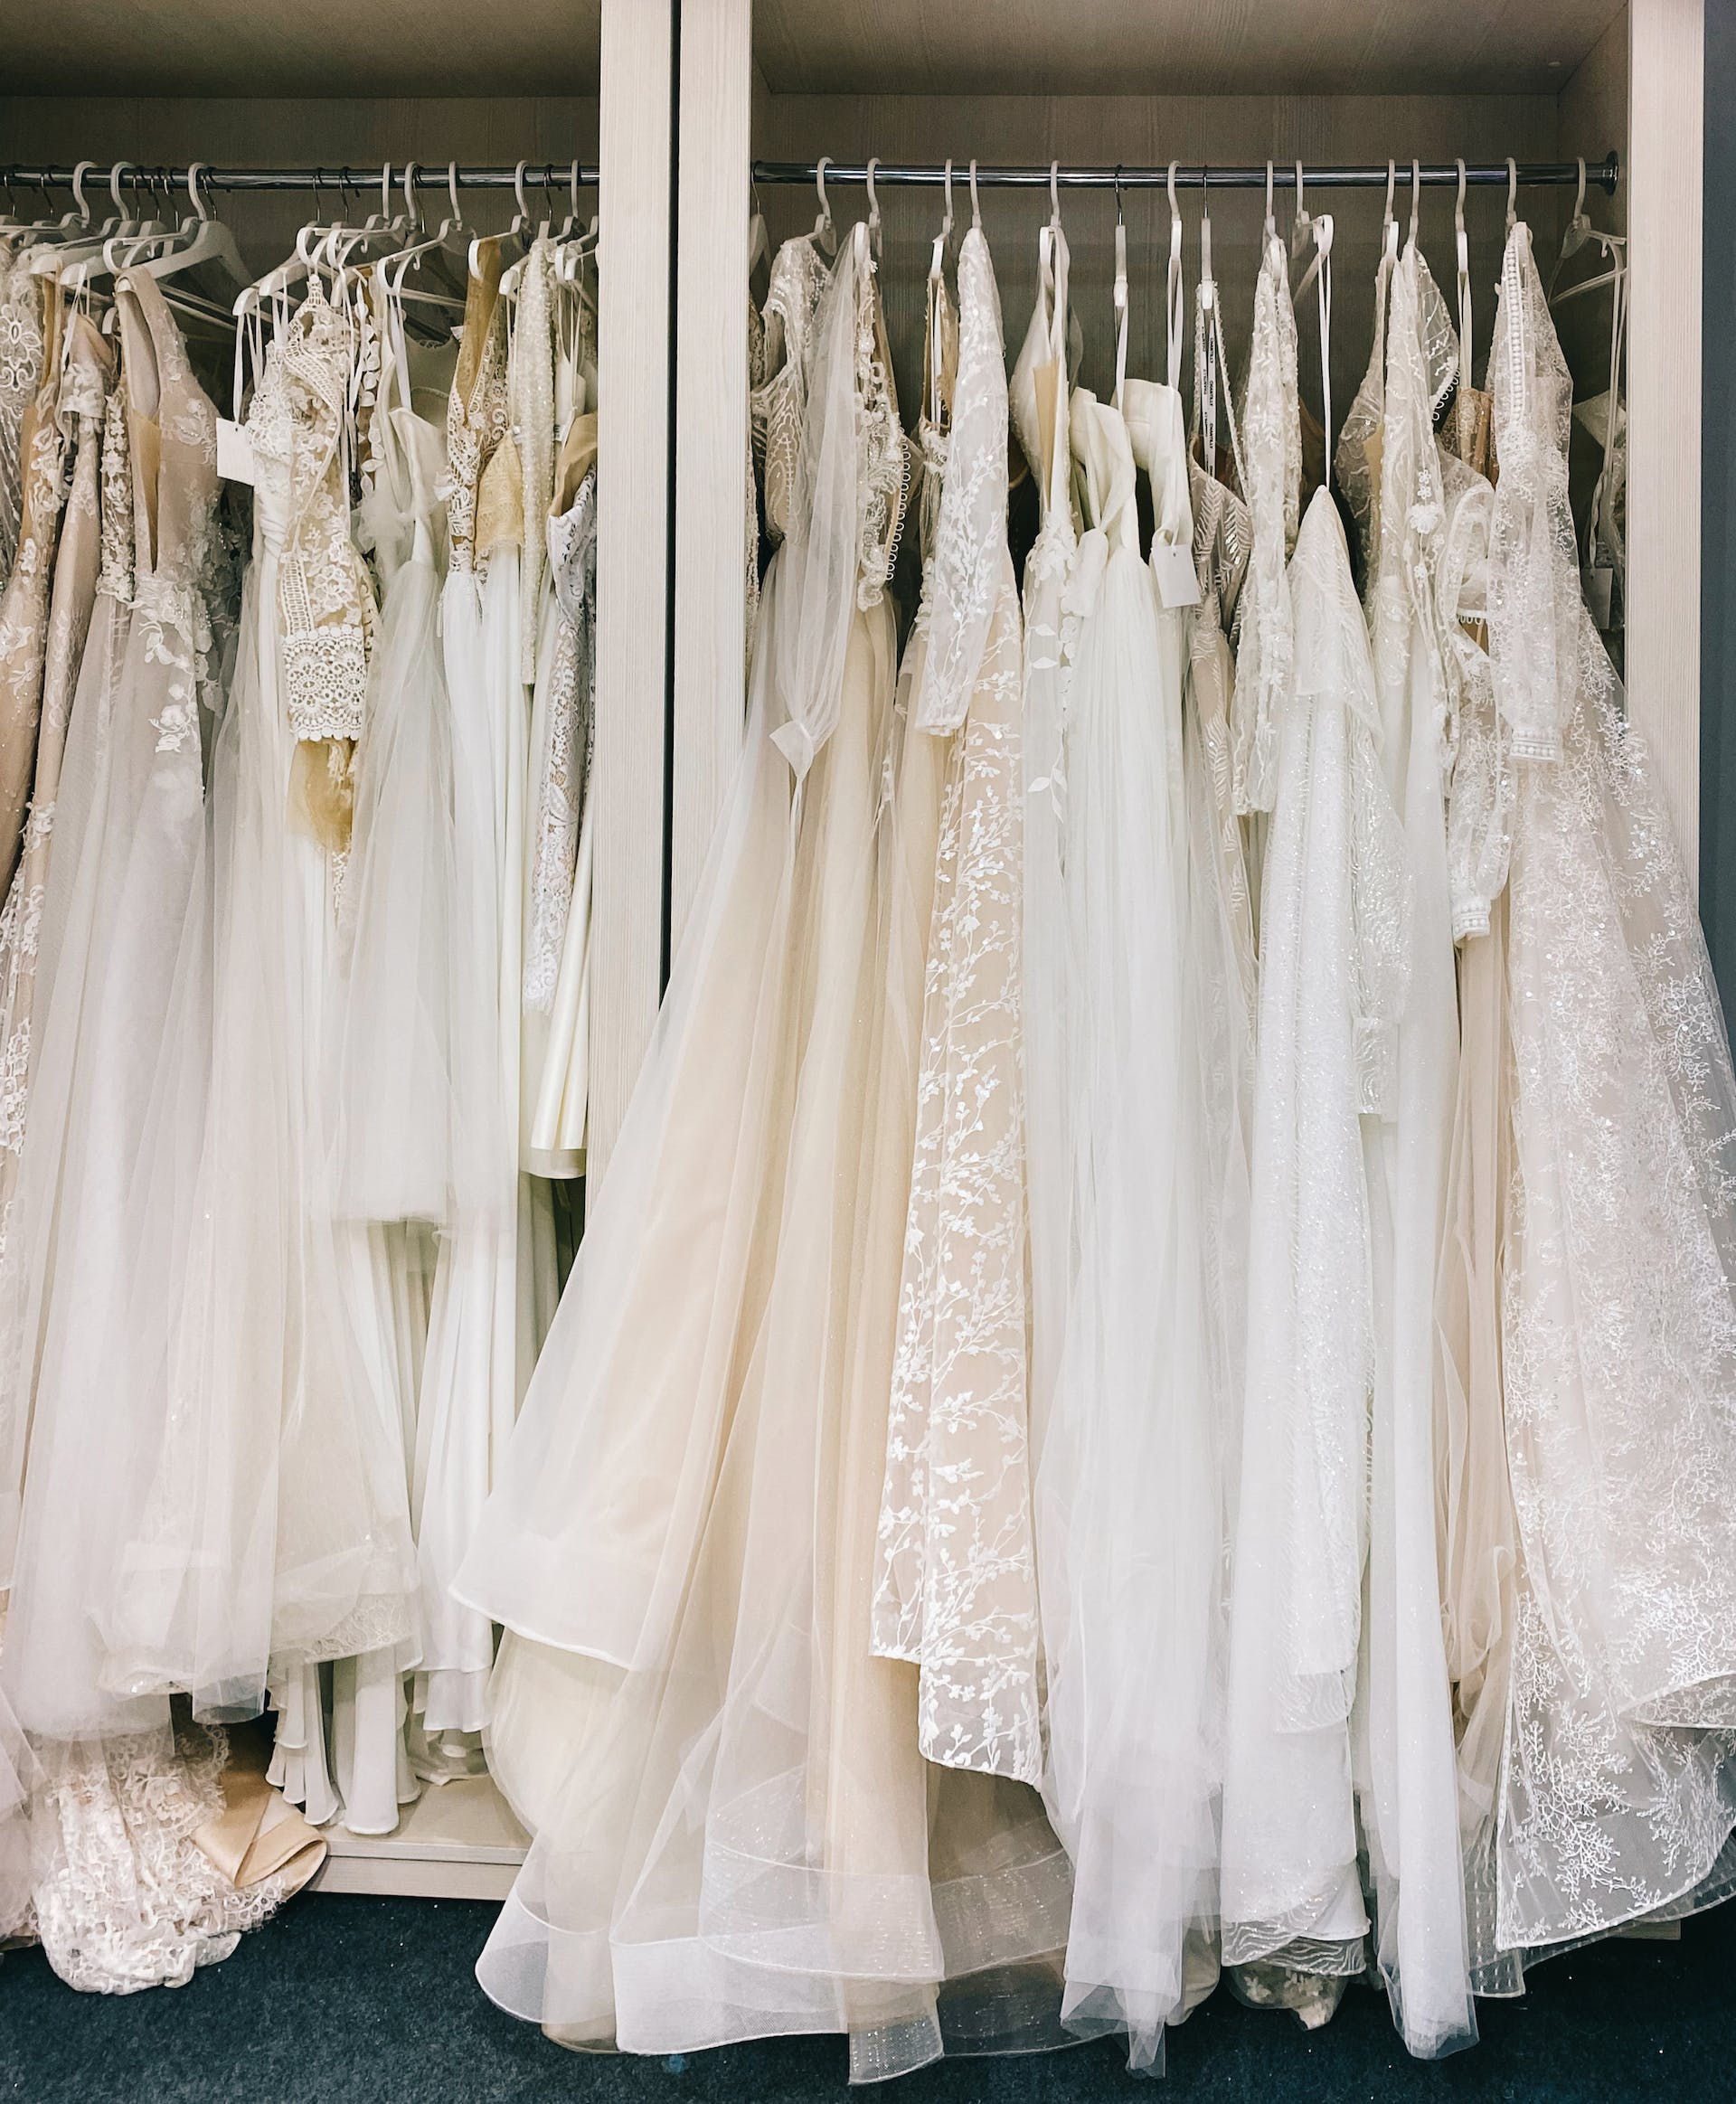 Brautkleider, die in einem Laden hängen | Quelle: Pexels